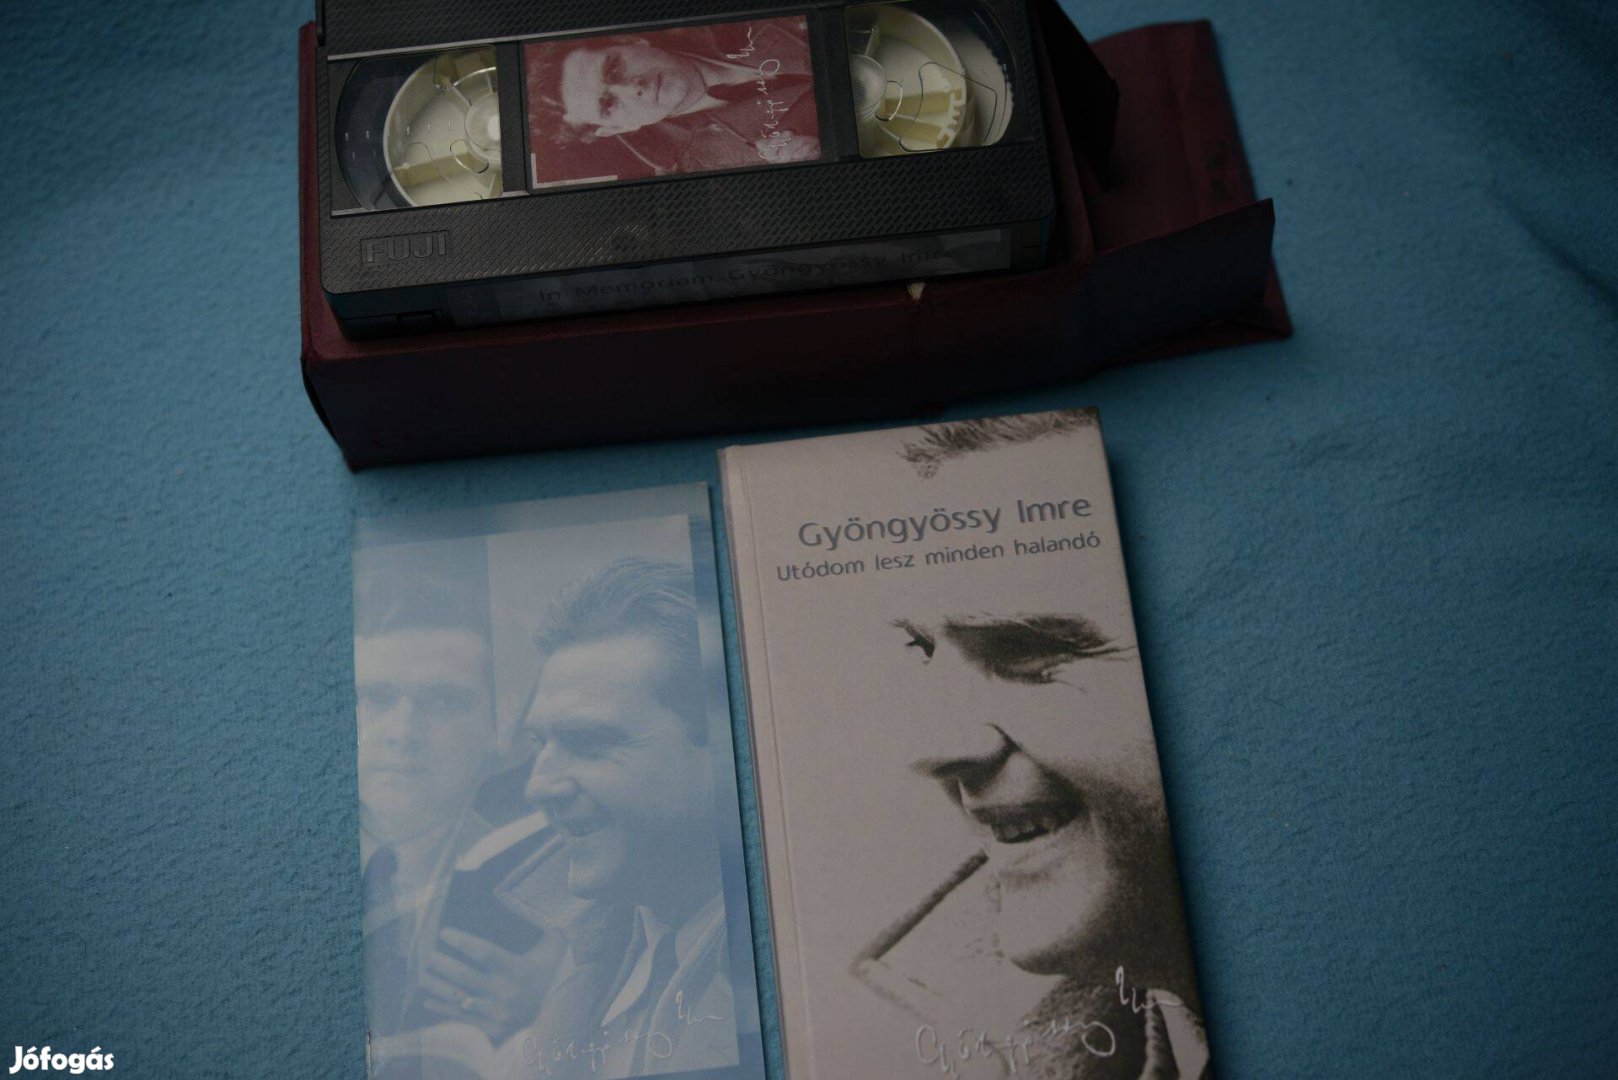 Gyöngyössy Imre - Utódom lesz minden halandó Könyv+VHS kazetta